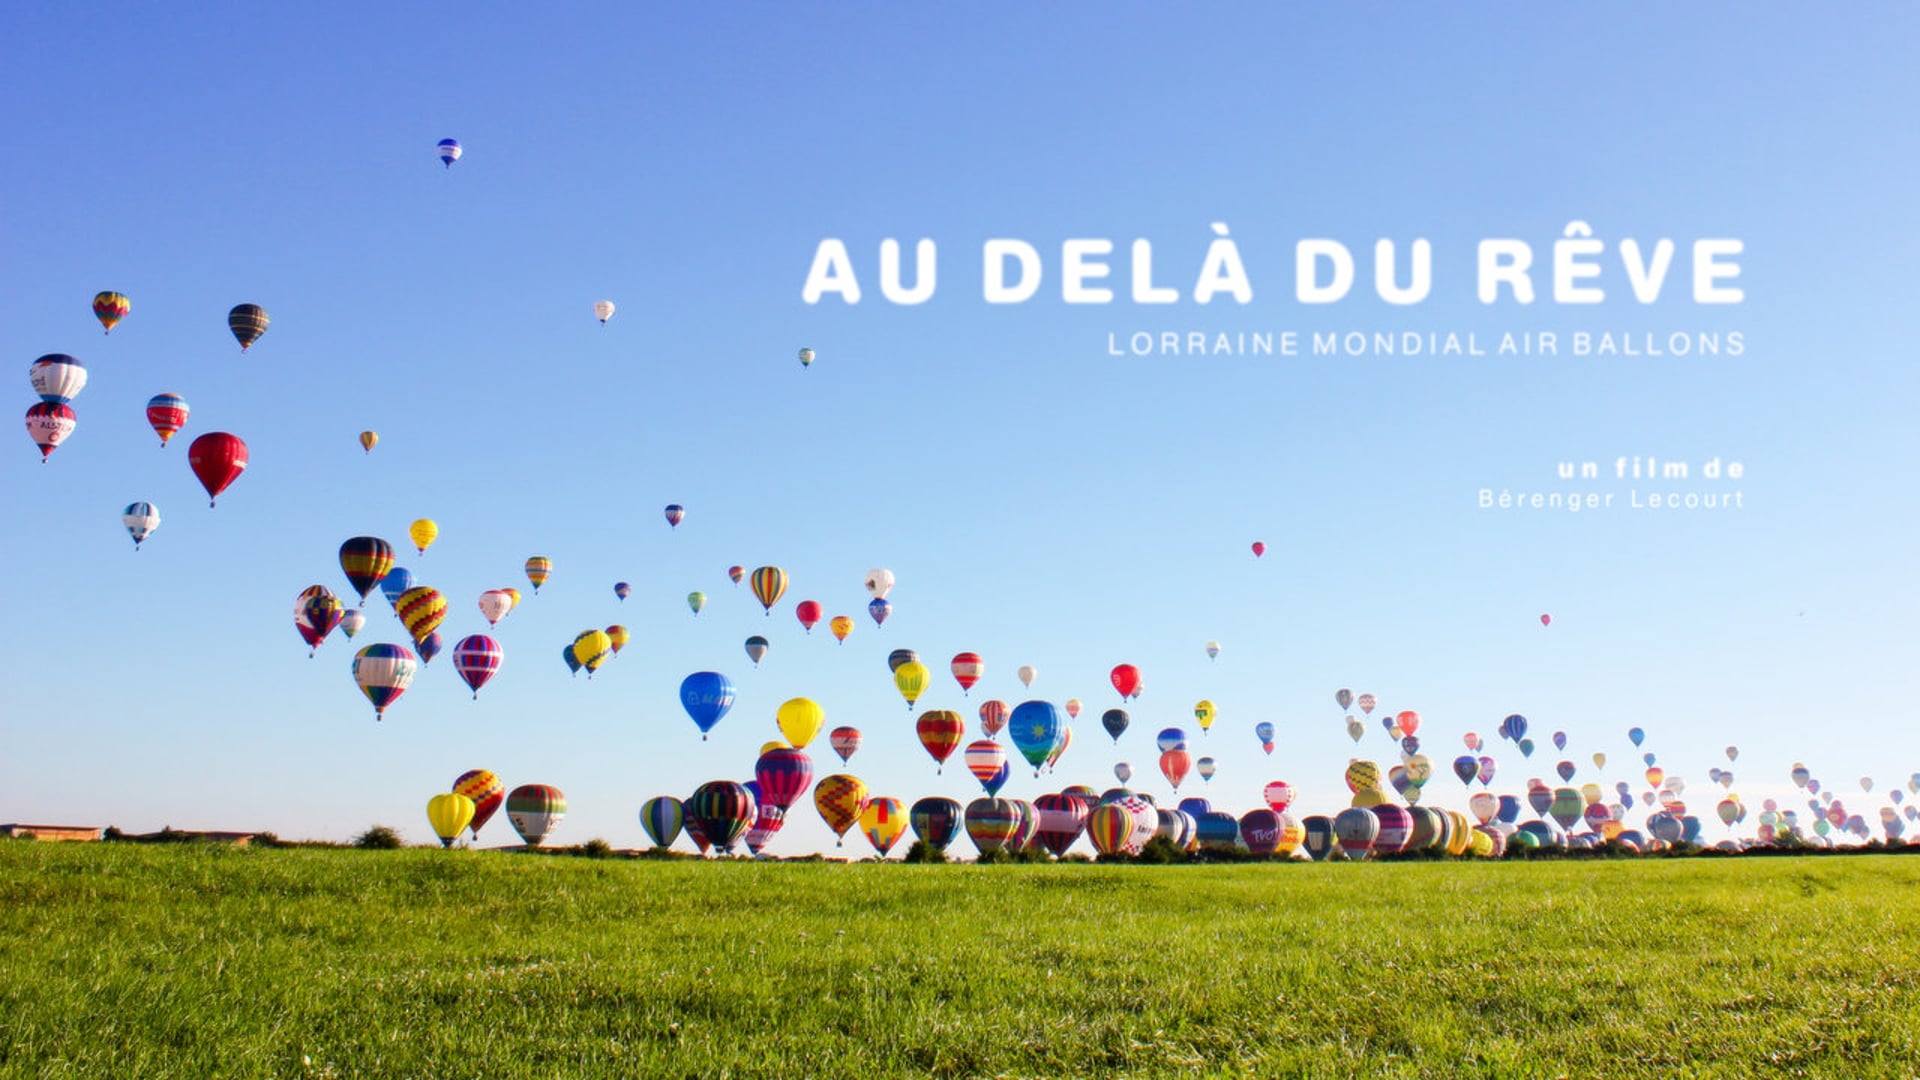 AU DELÀ DU RÊVE - Lorraine Mondial Air Ballons 2013 (HD)